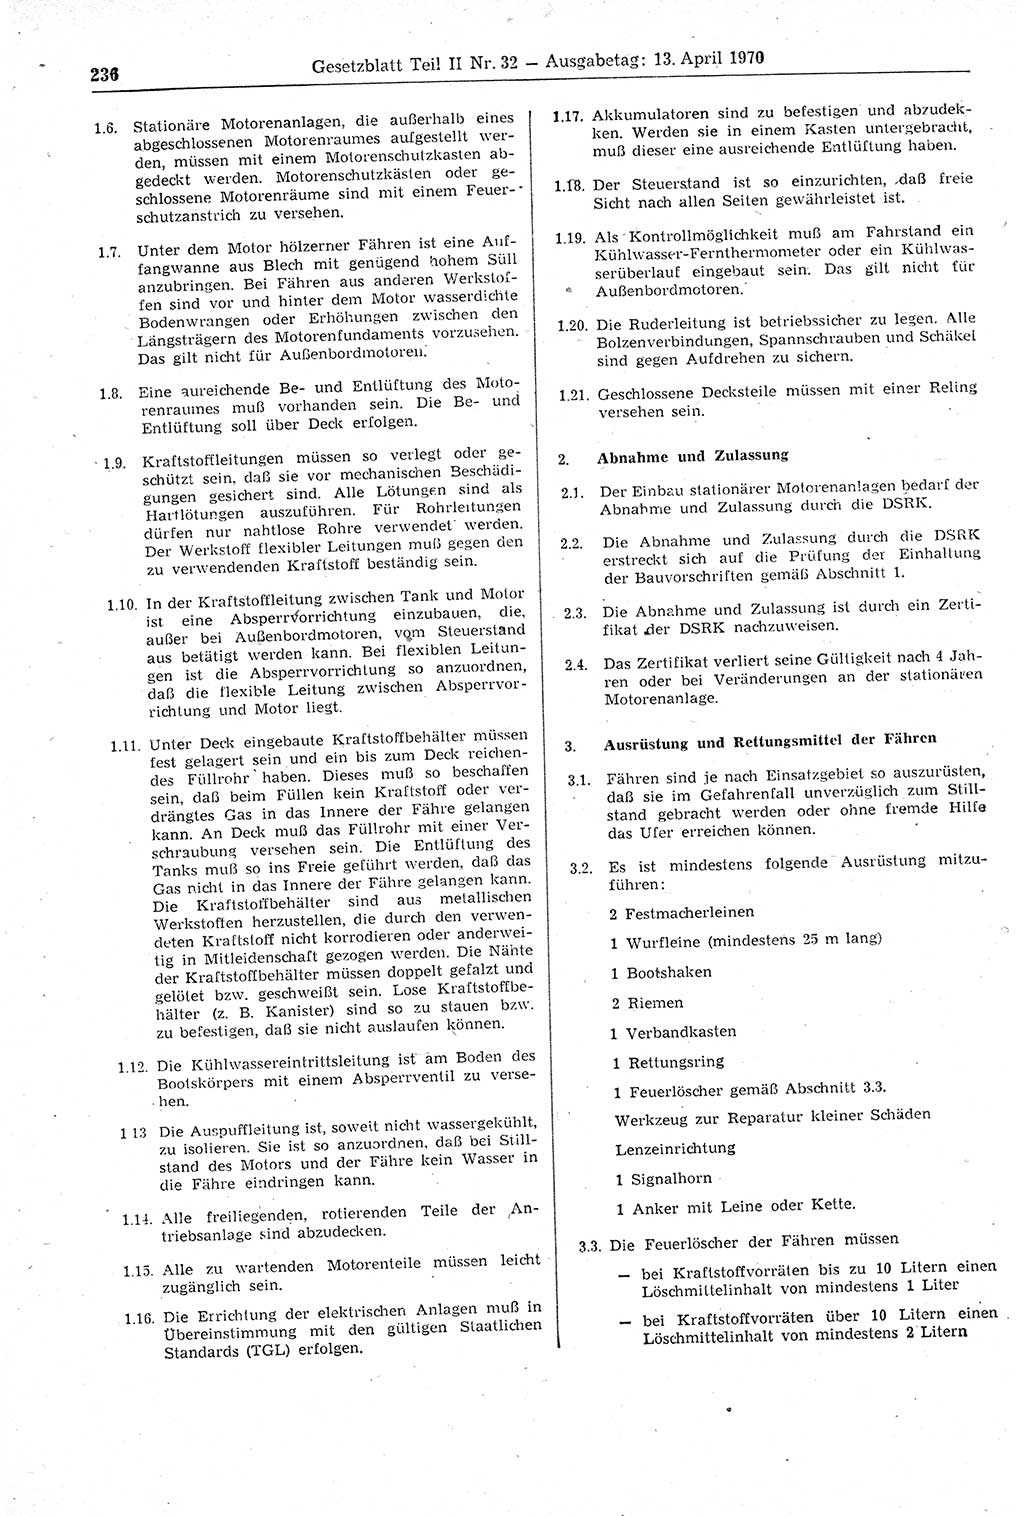 Gesetzblatt (GBl.) der Deutschen Demokratischen Republik (DDR) Teil ⅠⅠ 1970, Seite 236 (GBl. DDR ⅠⅠ 1970, S. 236)